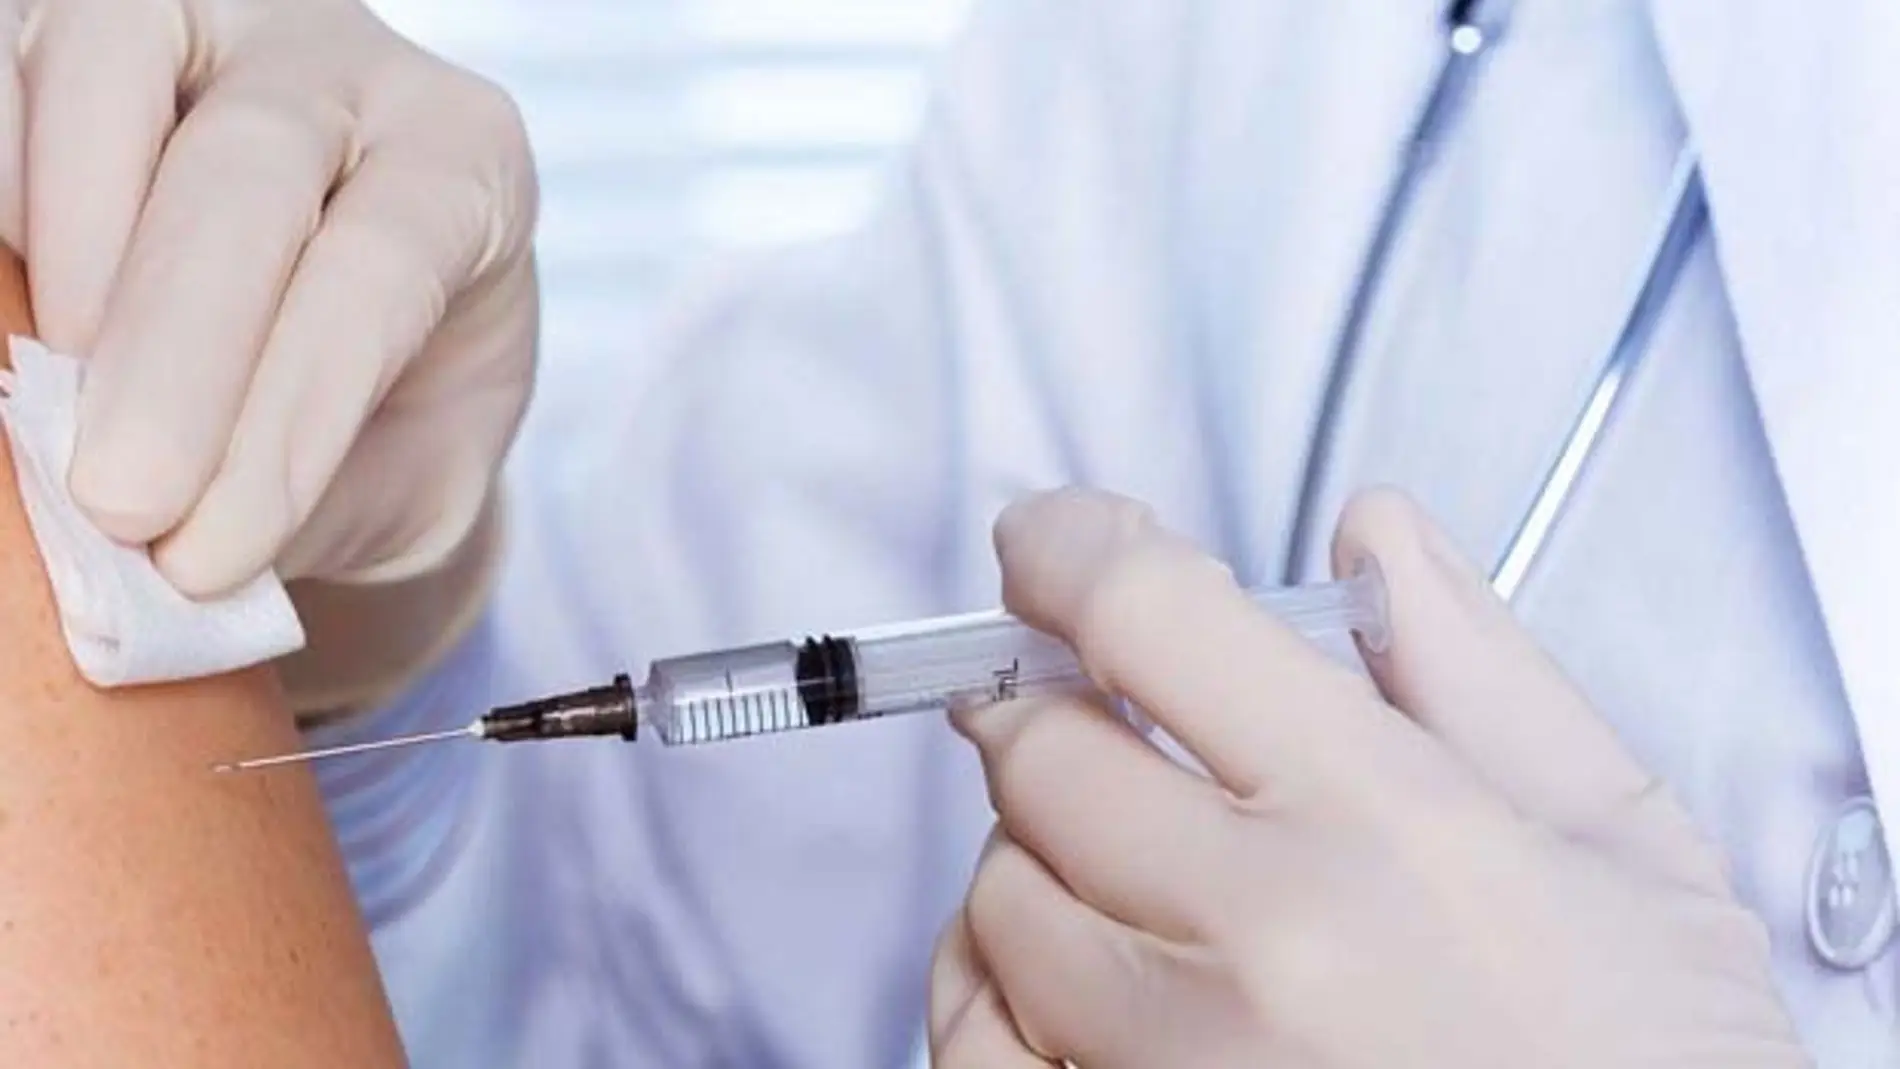 Rusia registra su tercera vacuna anticovid, la CoviVac